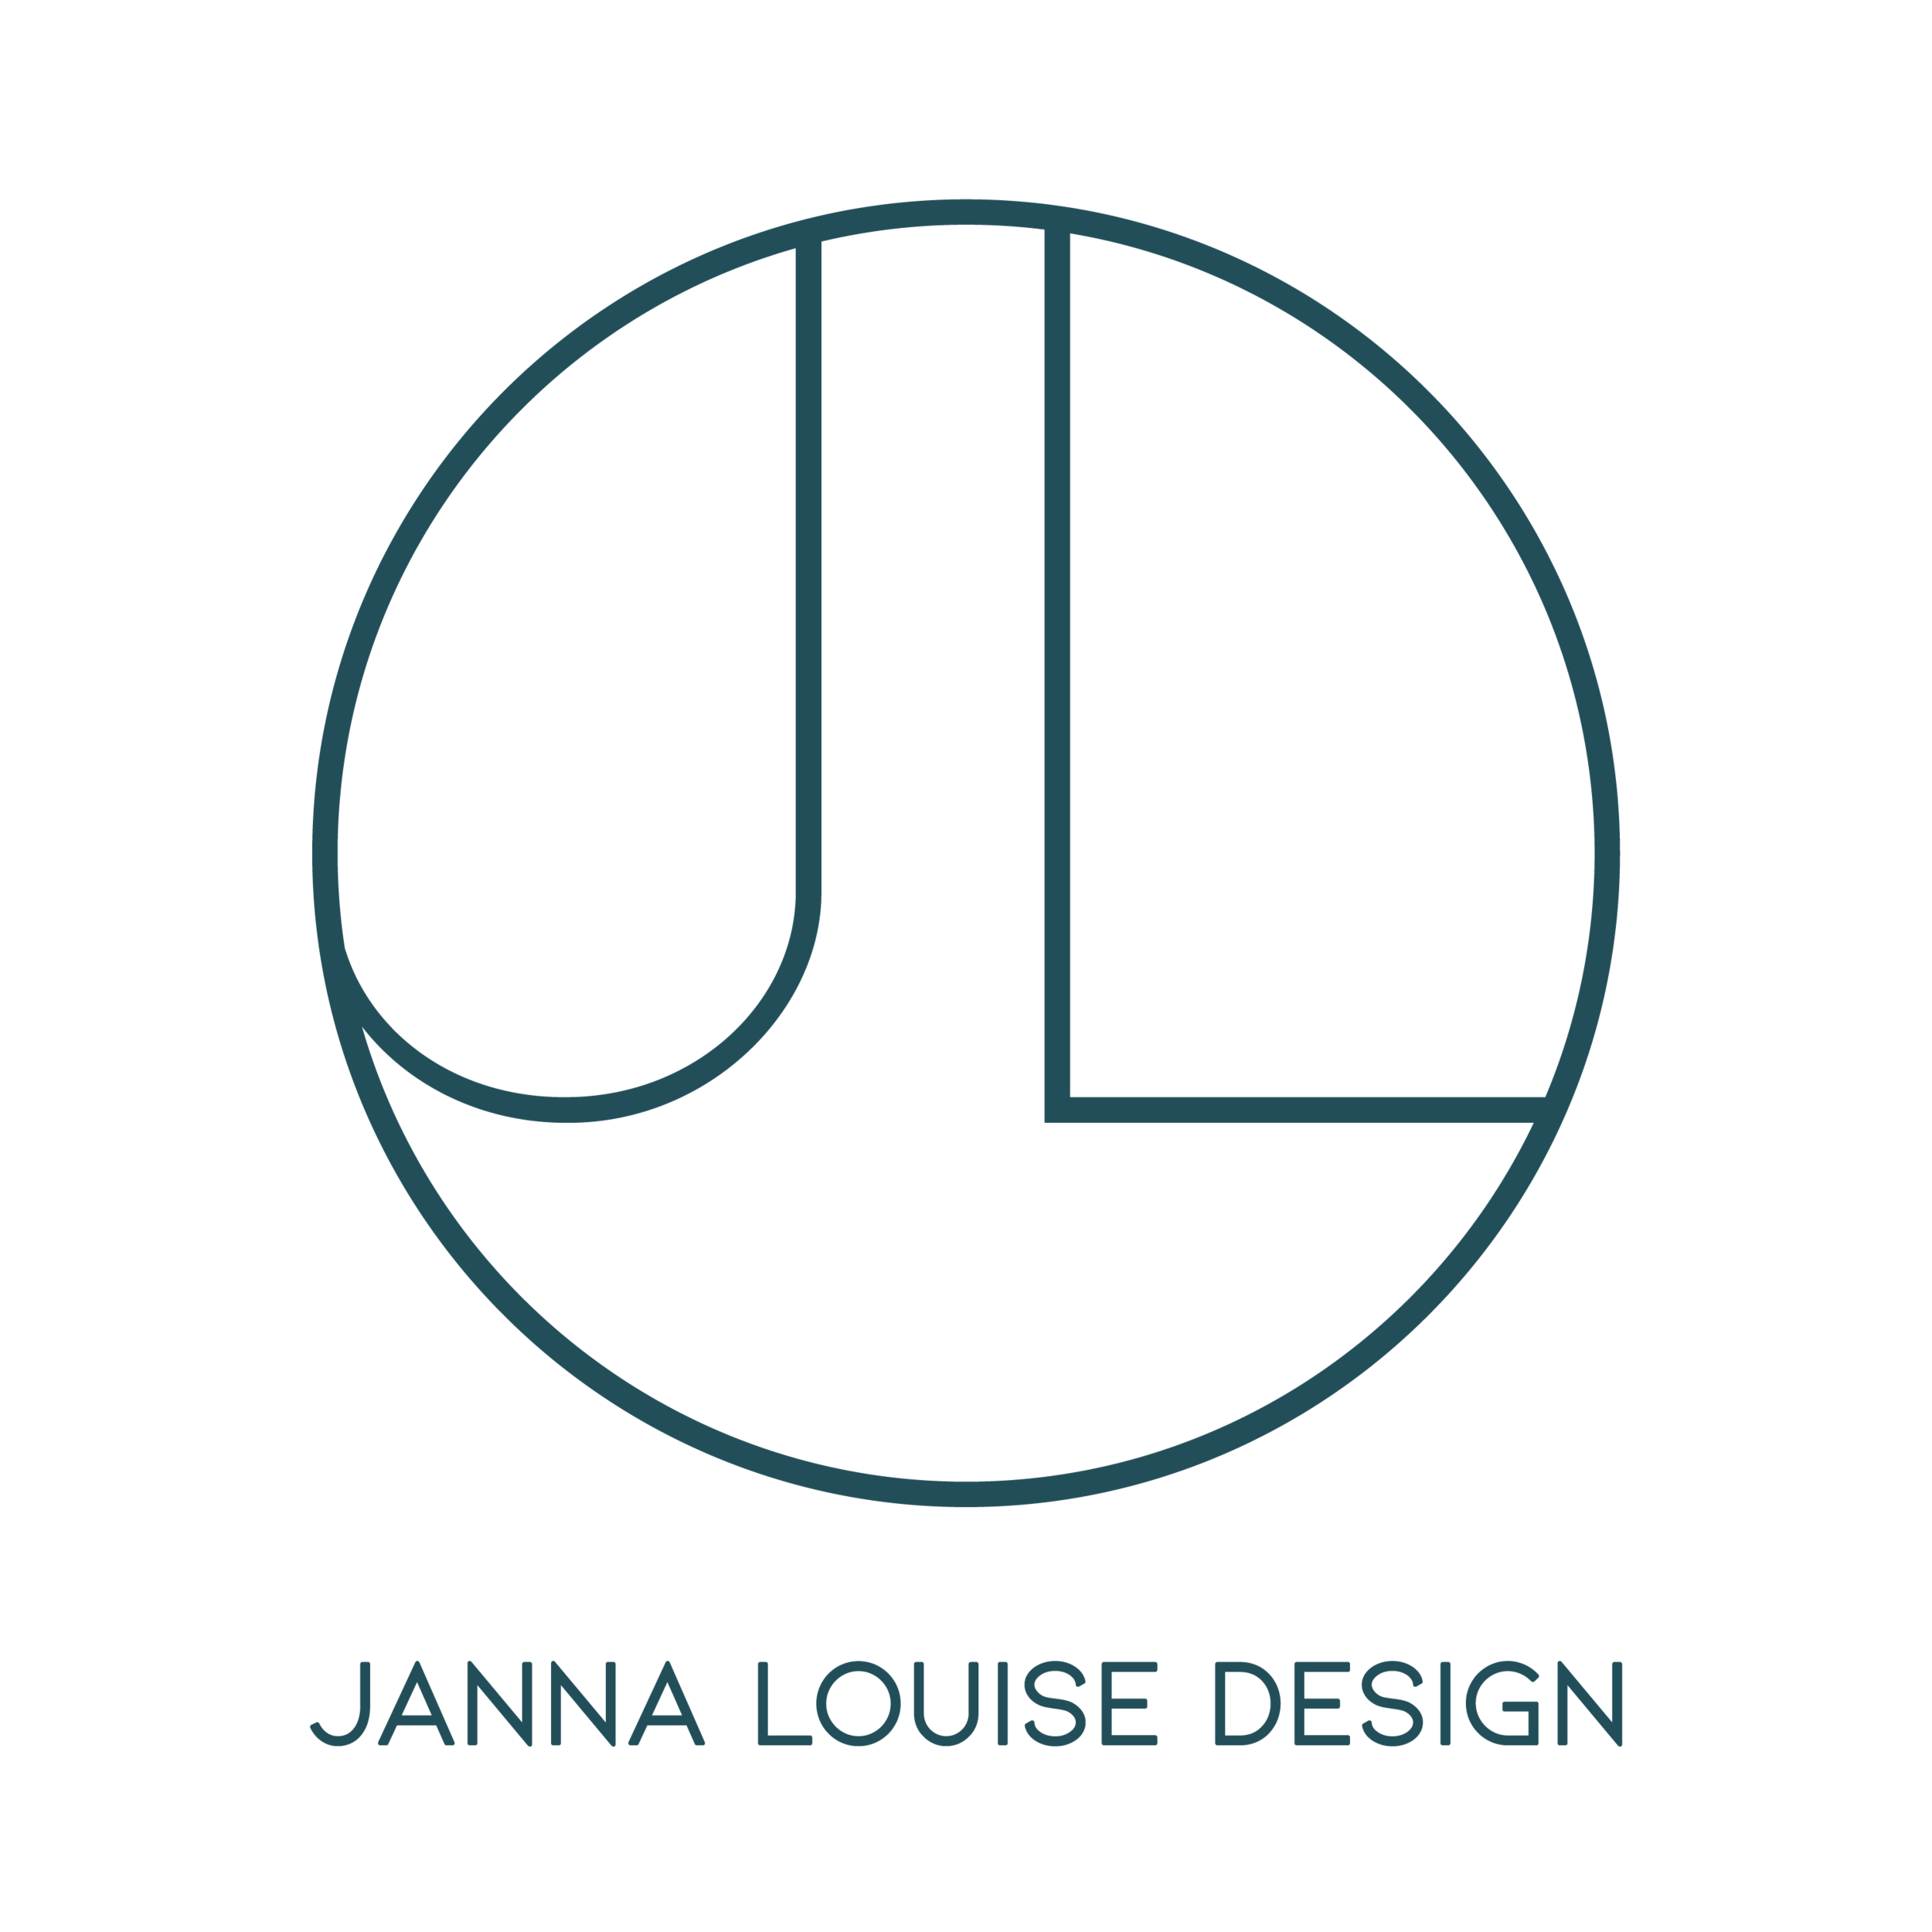 Janna Louise Design